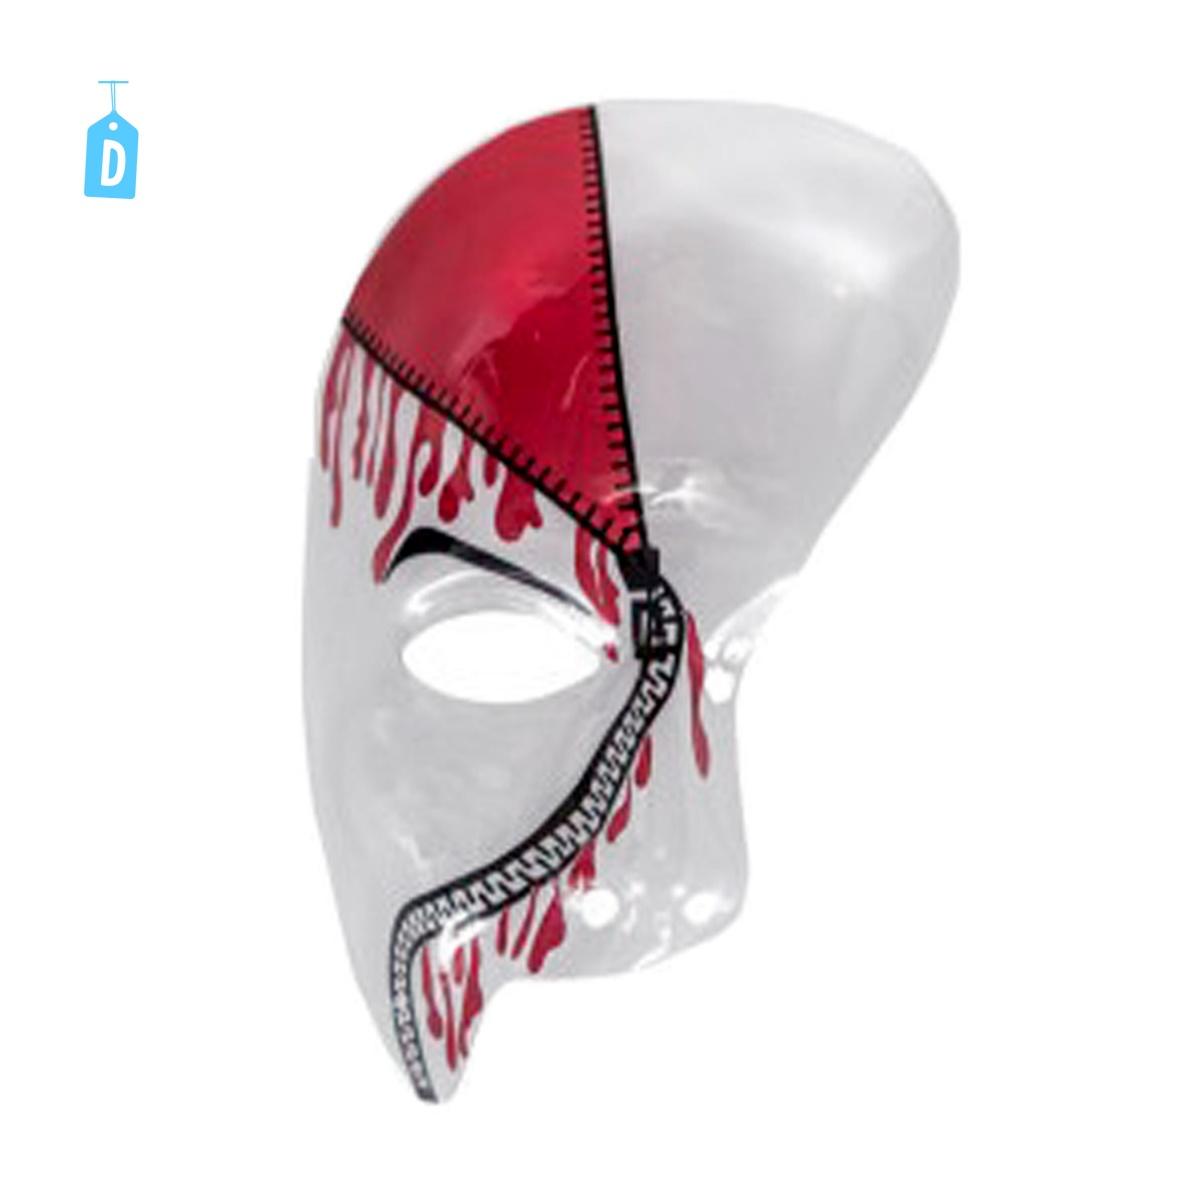 Maschera Teschio  Mezzo Viso Trasparente con Decorazioni 4 Modelli